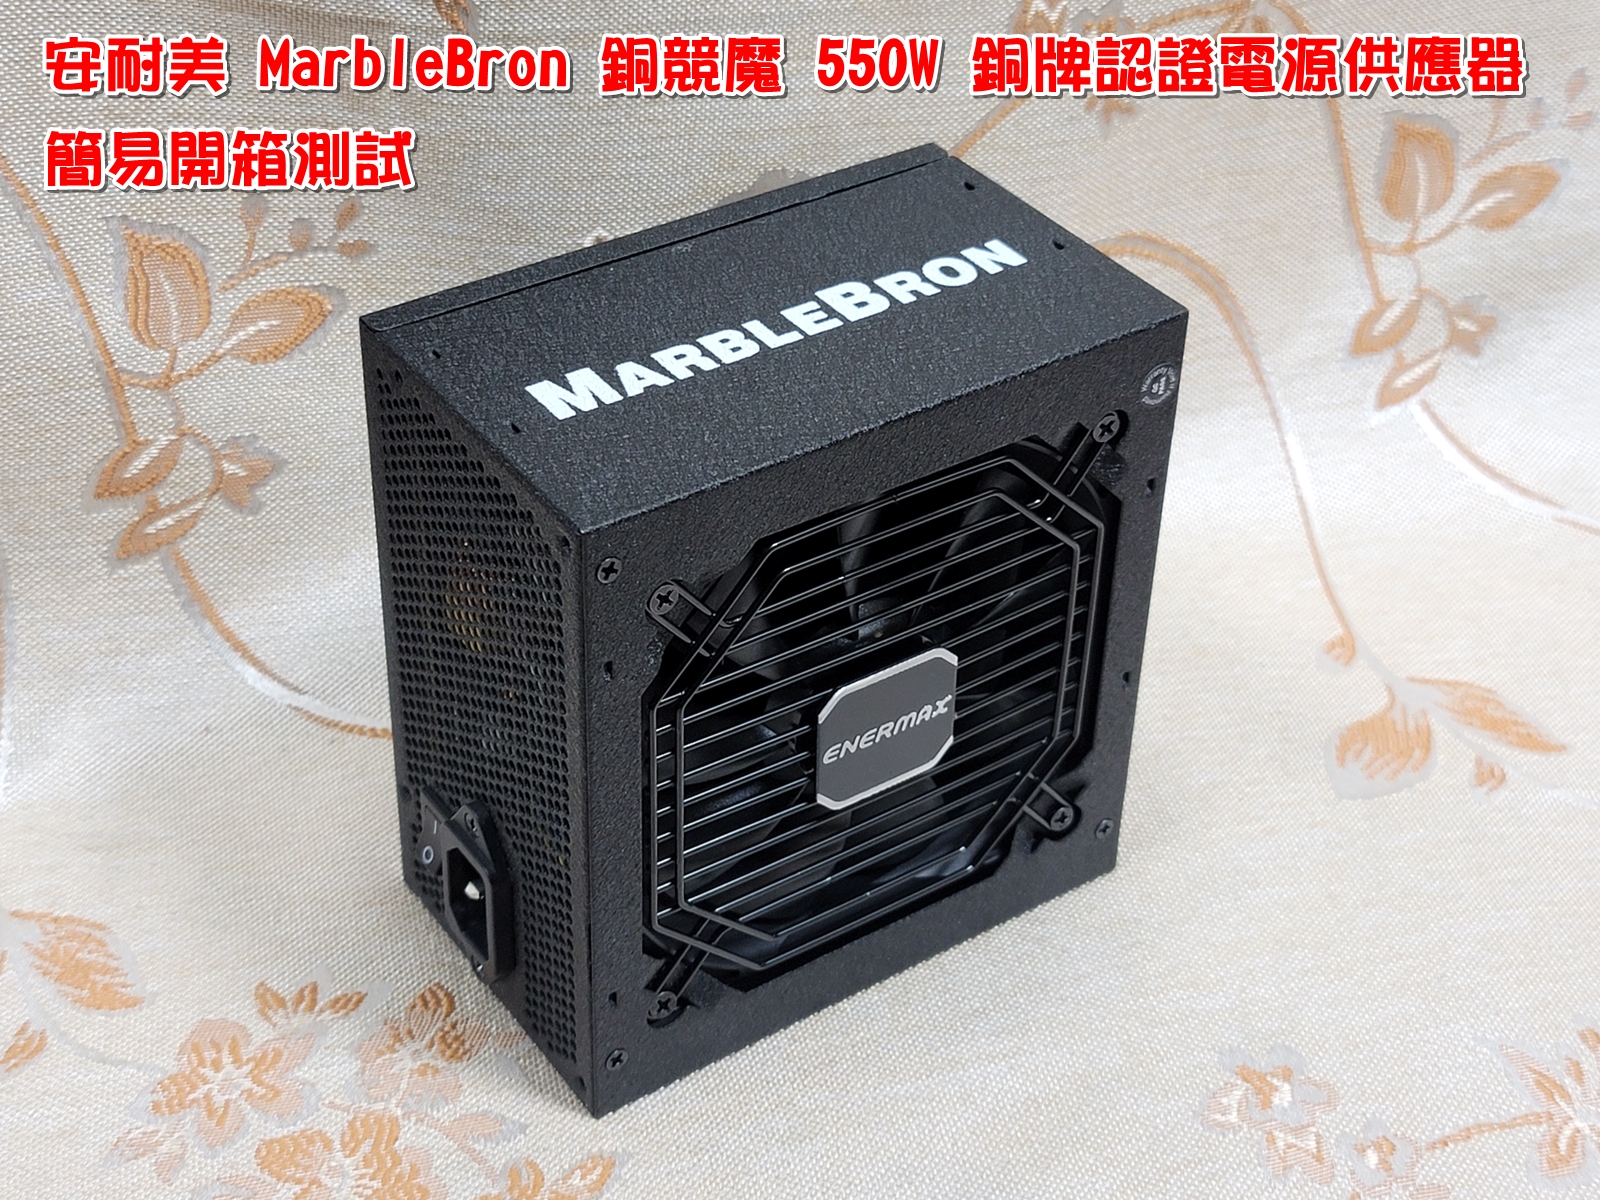 安耐美 MarbleBron 銅競魔 550W 銅牌認證電源供應器簡易開箱6680